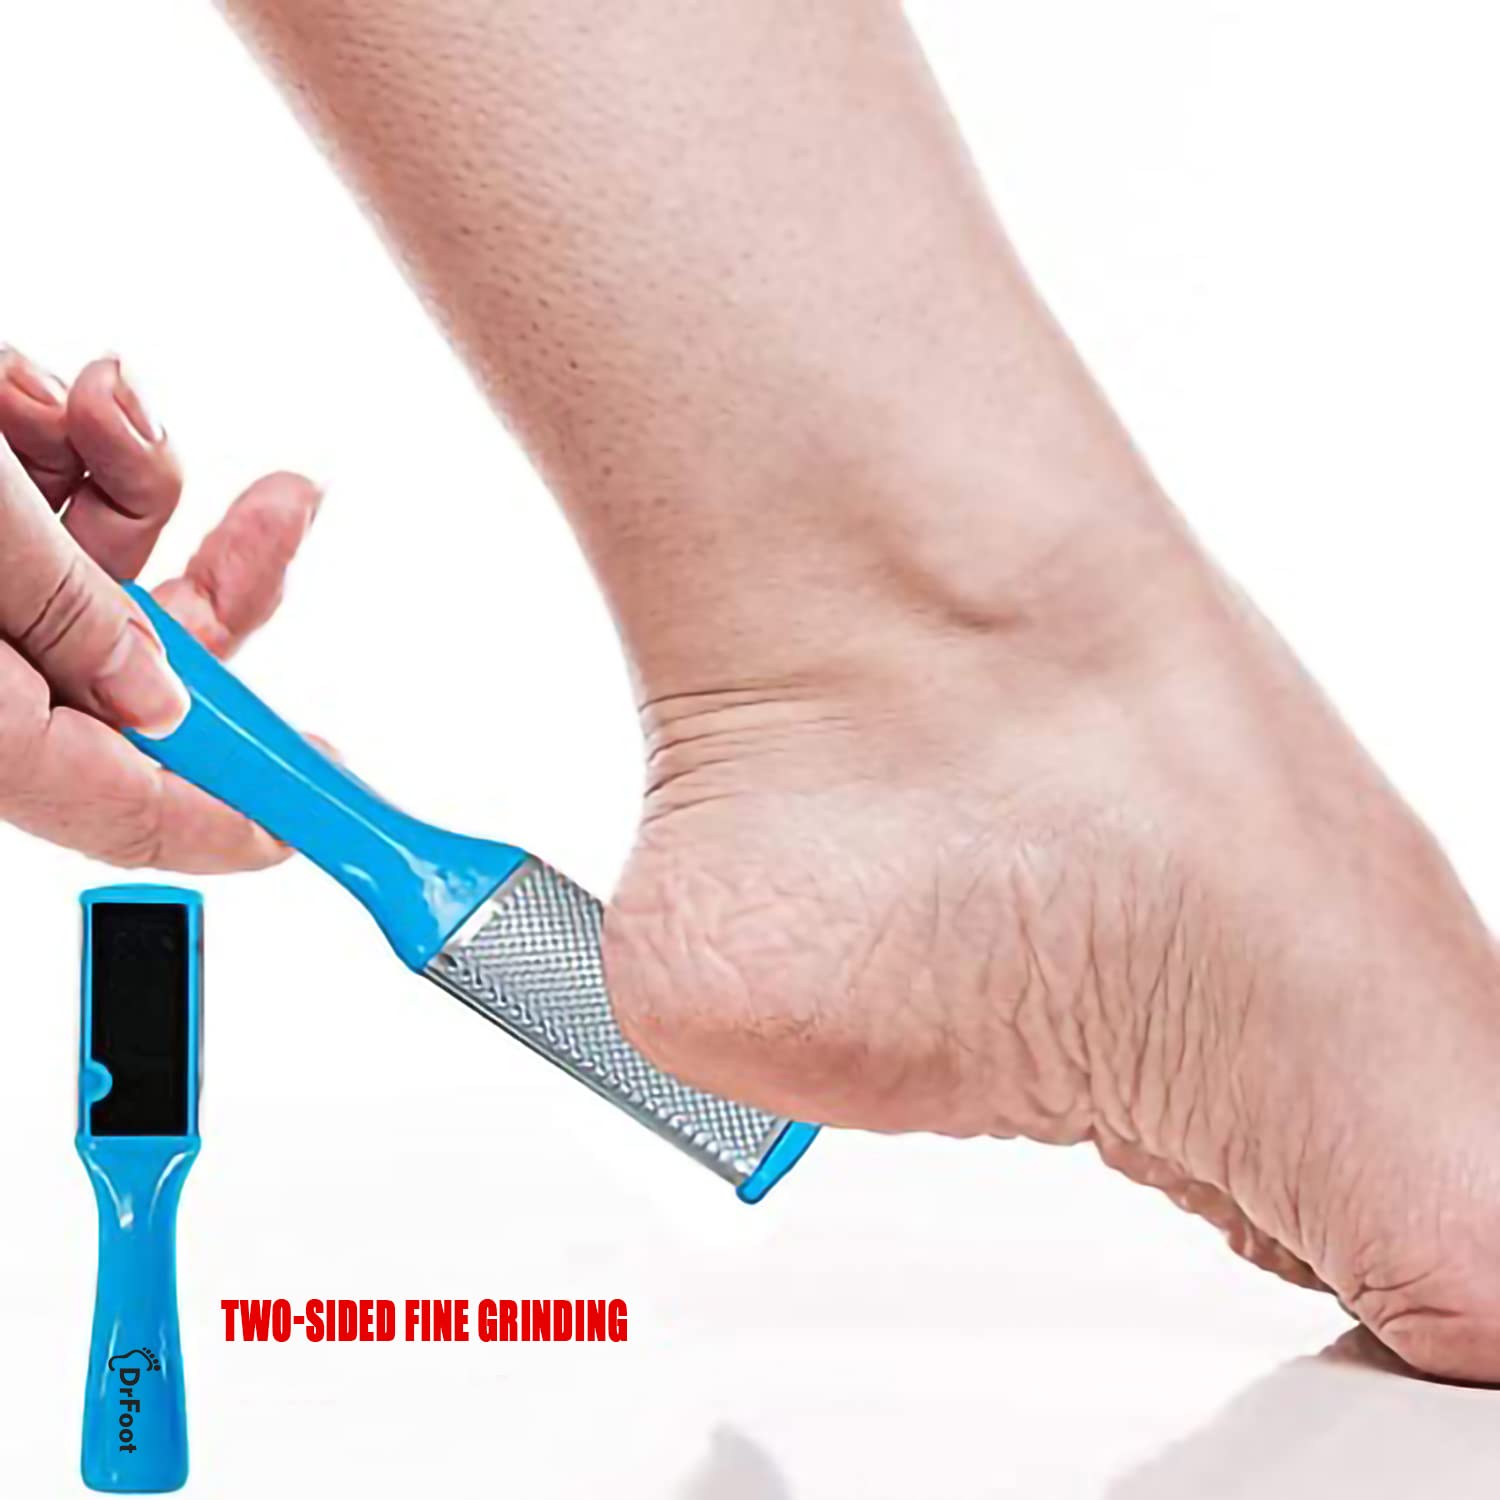 Dr Foot Pedicure Tools for Feet - 8 in 1 Pedicure Kit | Foot Scrubber for Dead Skin, Callus Remover, Foot Scraper, Foot File, Pitchfork, Filer for Nail Repair - 1 Set (Pack of 3)